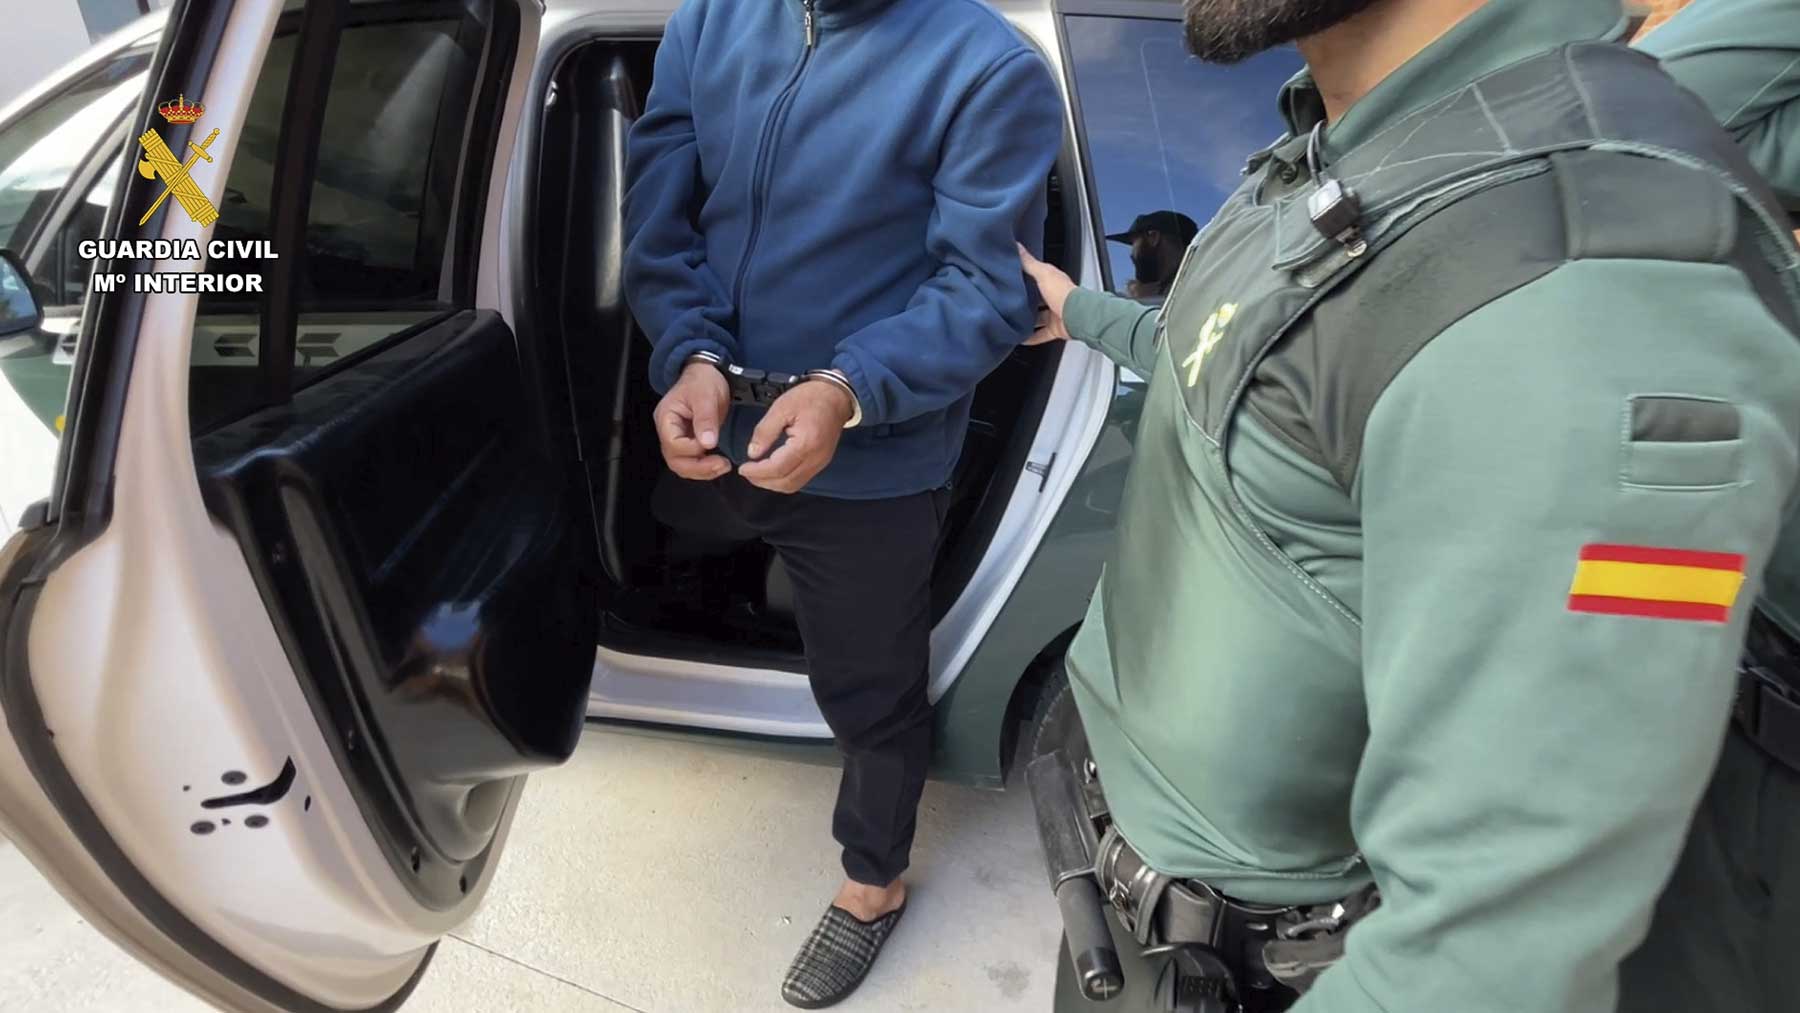 Momento de la detención del presunto agresor en Nájera por parte de la Guardia Civil.